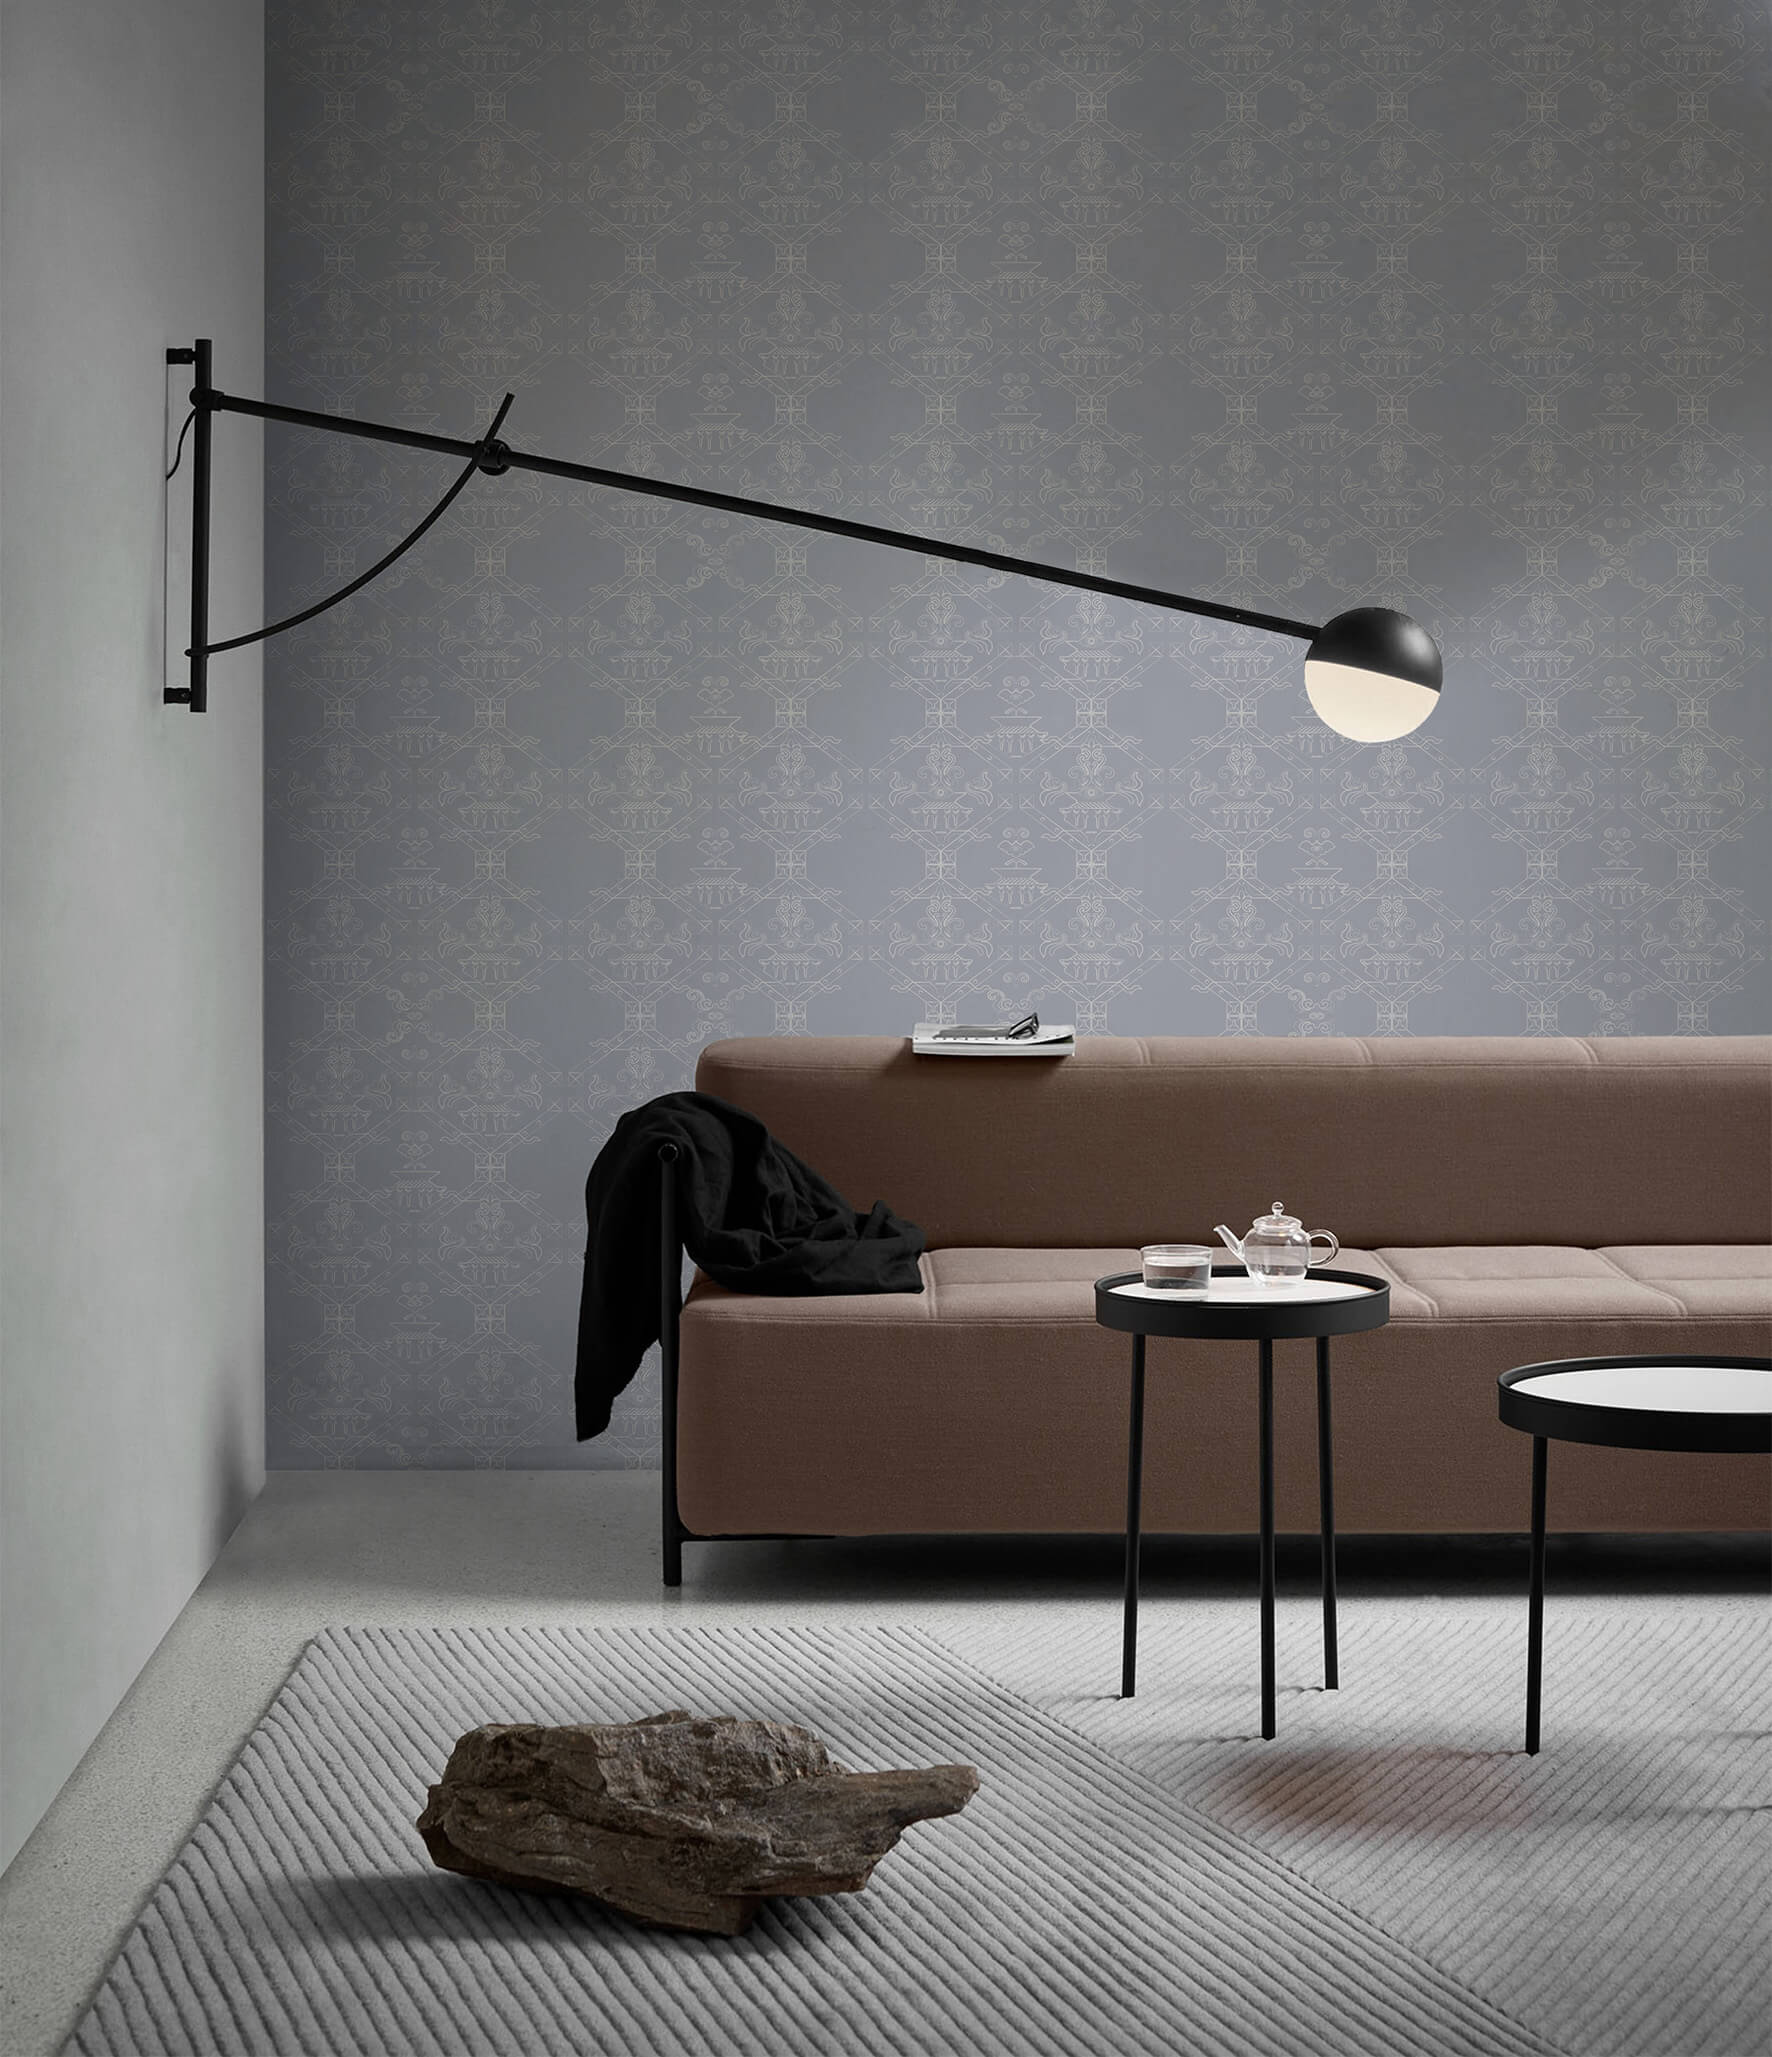 Ricamo-Grigio-Polvere-MaVoix-carta-da-parati-interior-living-room-decor